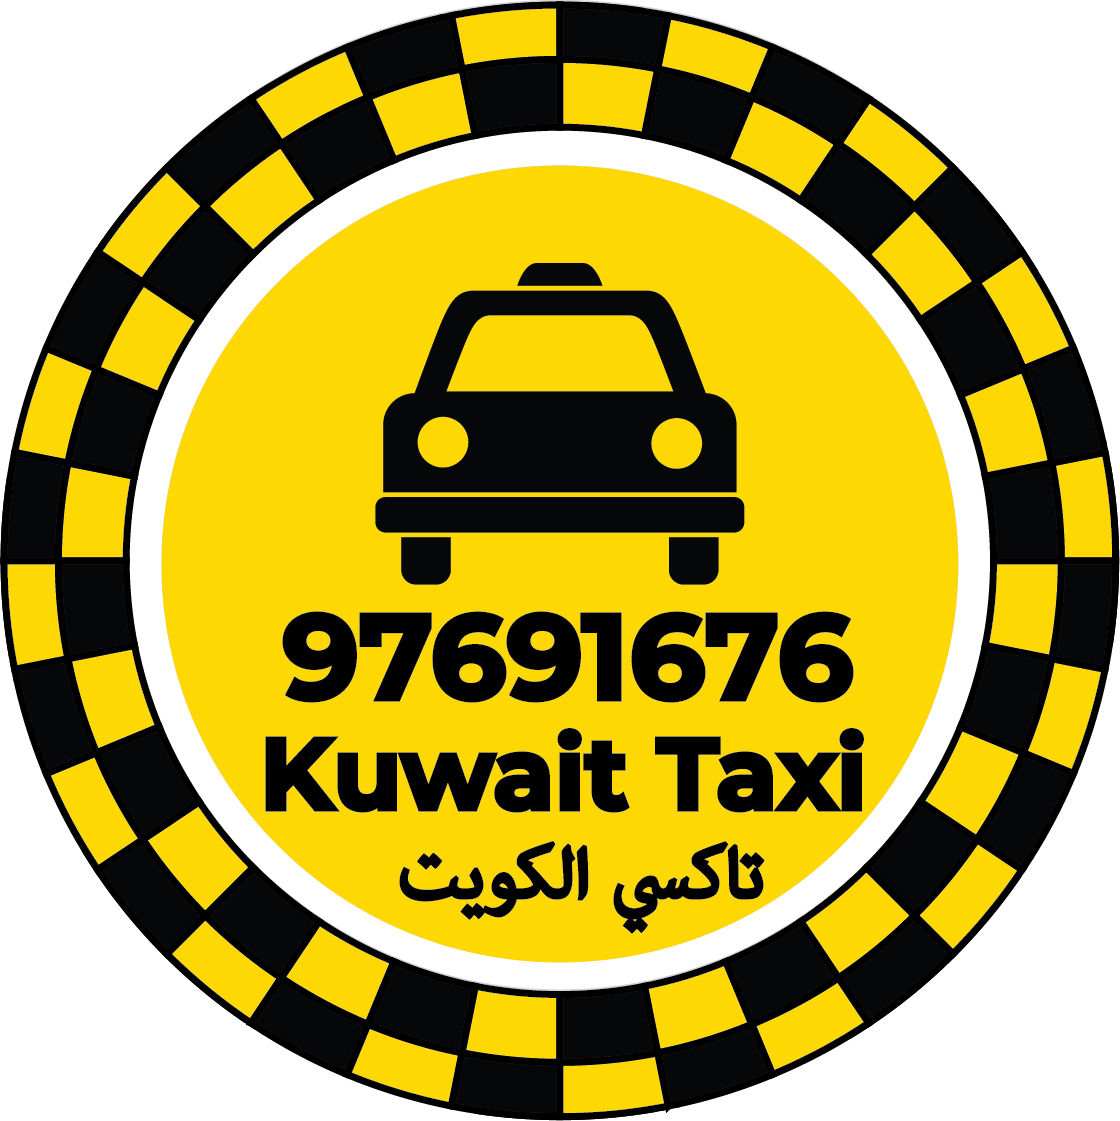 تكسي لضجيج 97691676 - رقم تاكسي لضجيج الكويت